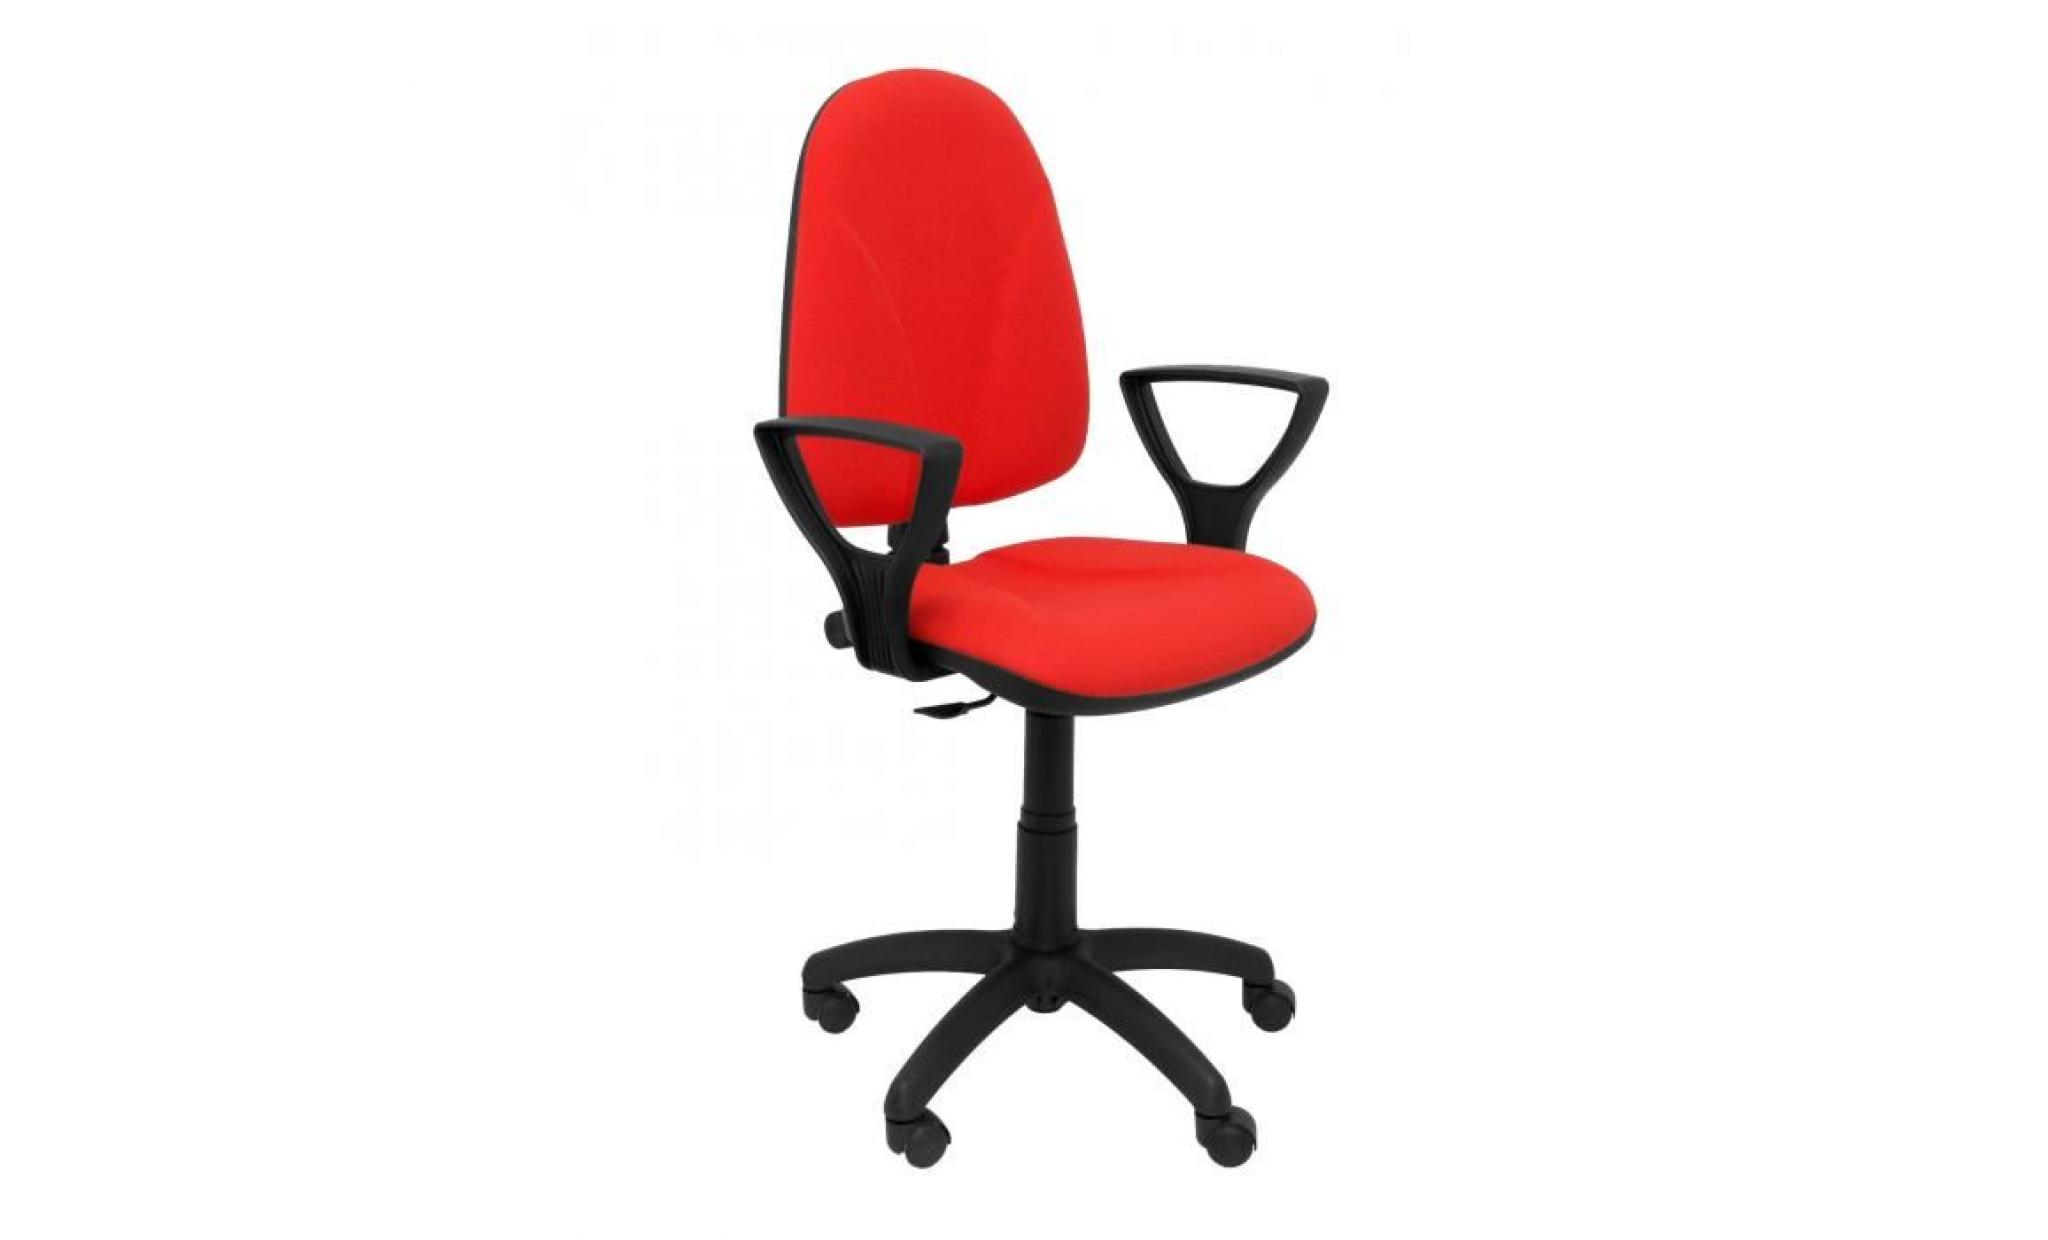 modello 1006rj algarra   sedia da ufficio ergonomica con meccanismo di contatto permanente e regolabile in altezza   sedile e